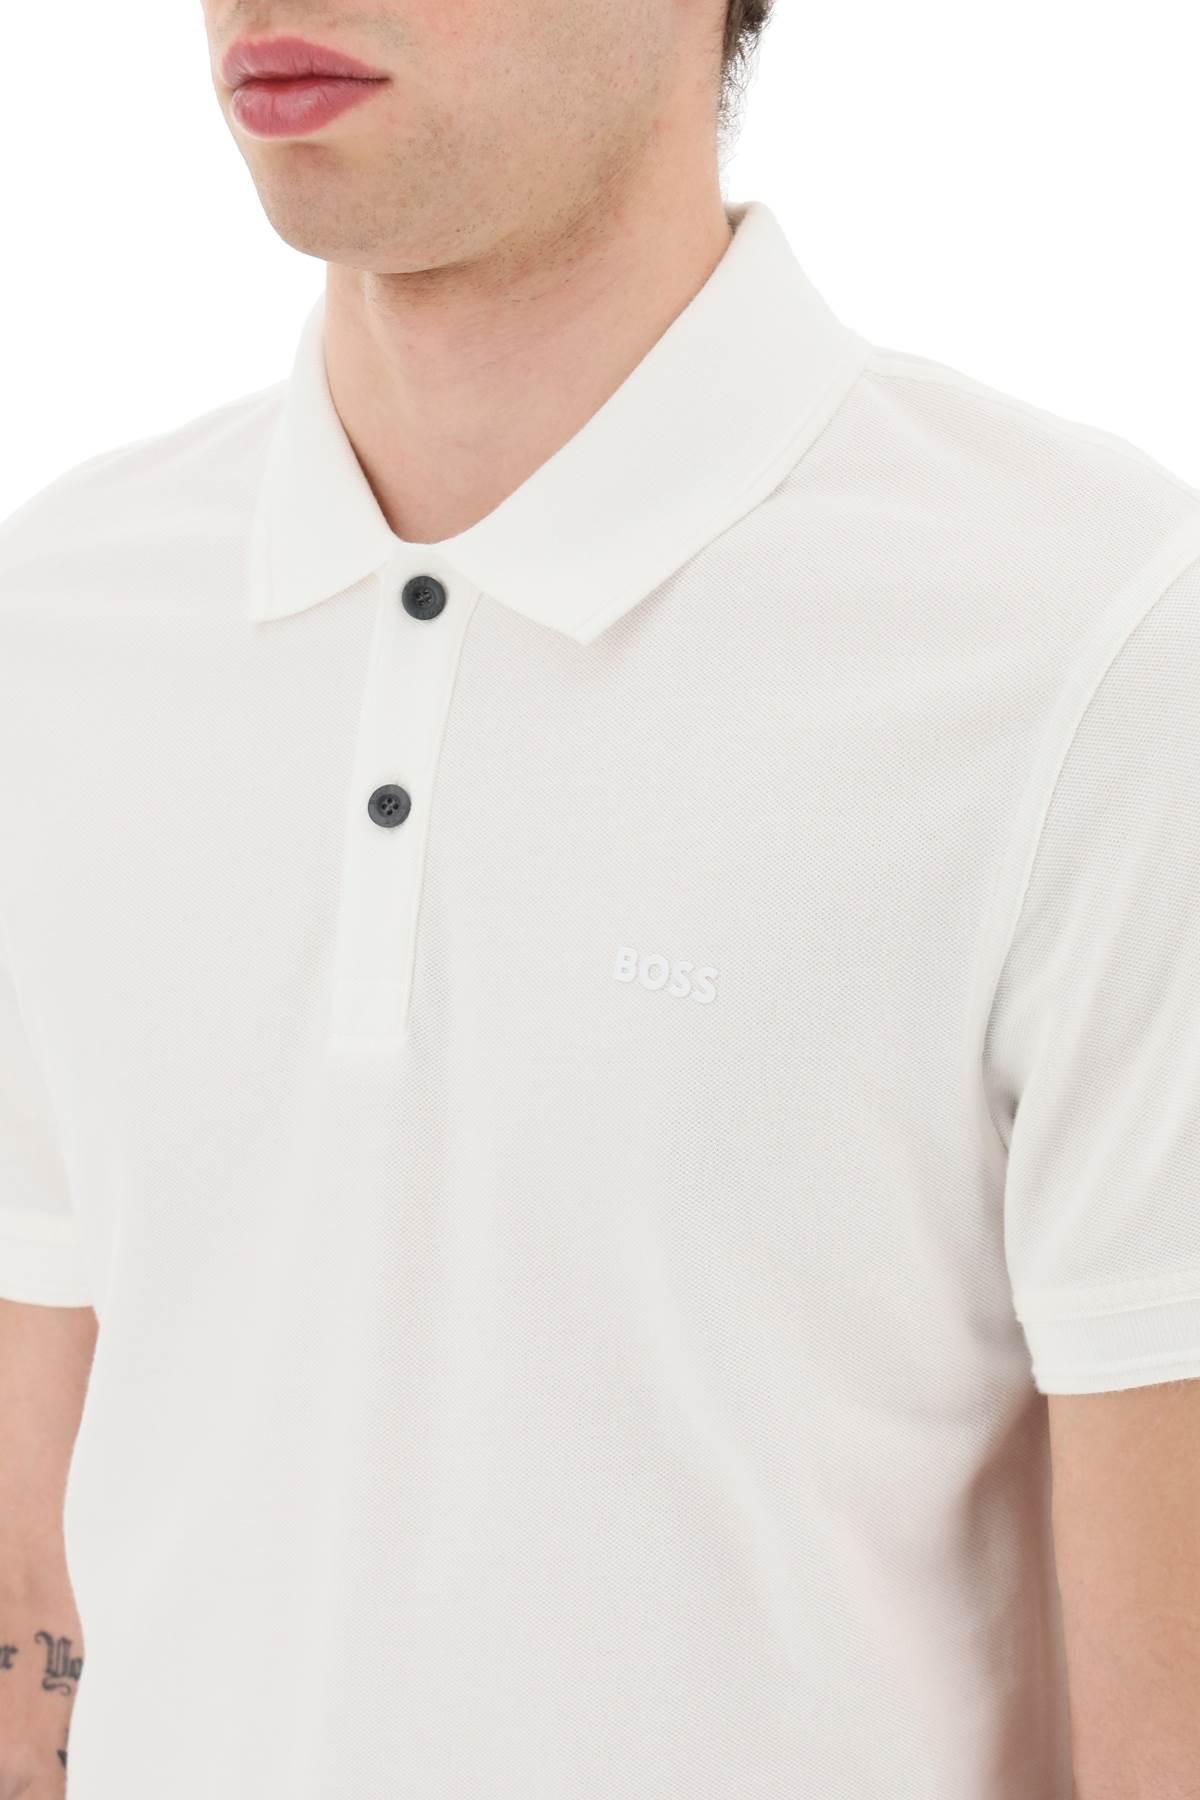 BOSS by HUGO BOSS Slim Fit 'prime' Polo Shirt in White for Men | Lyst